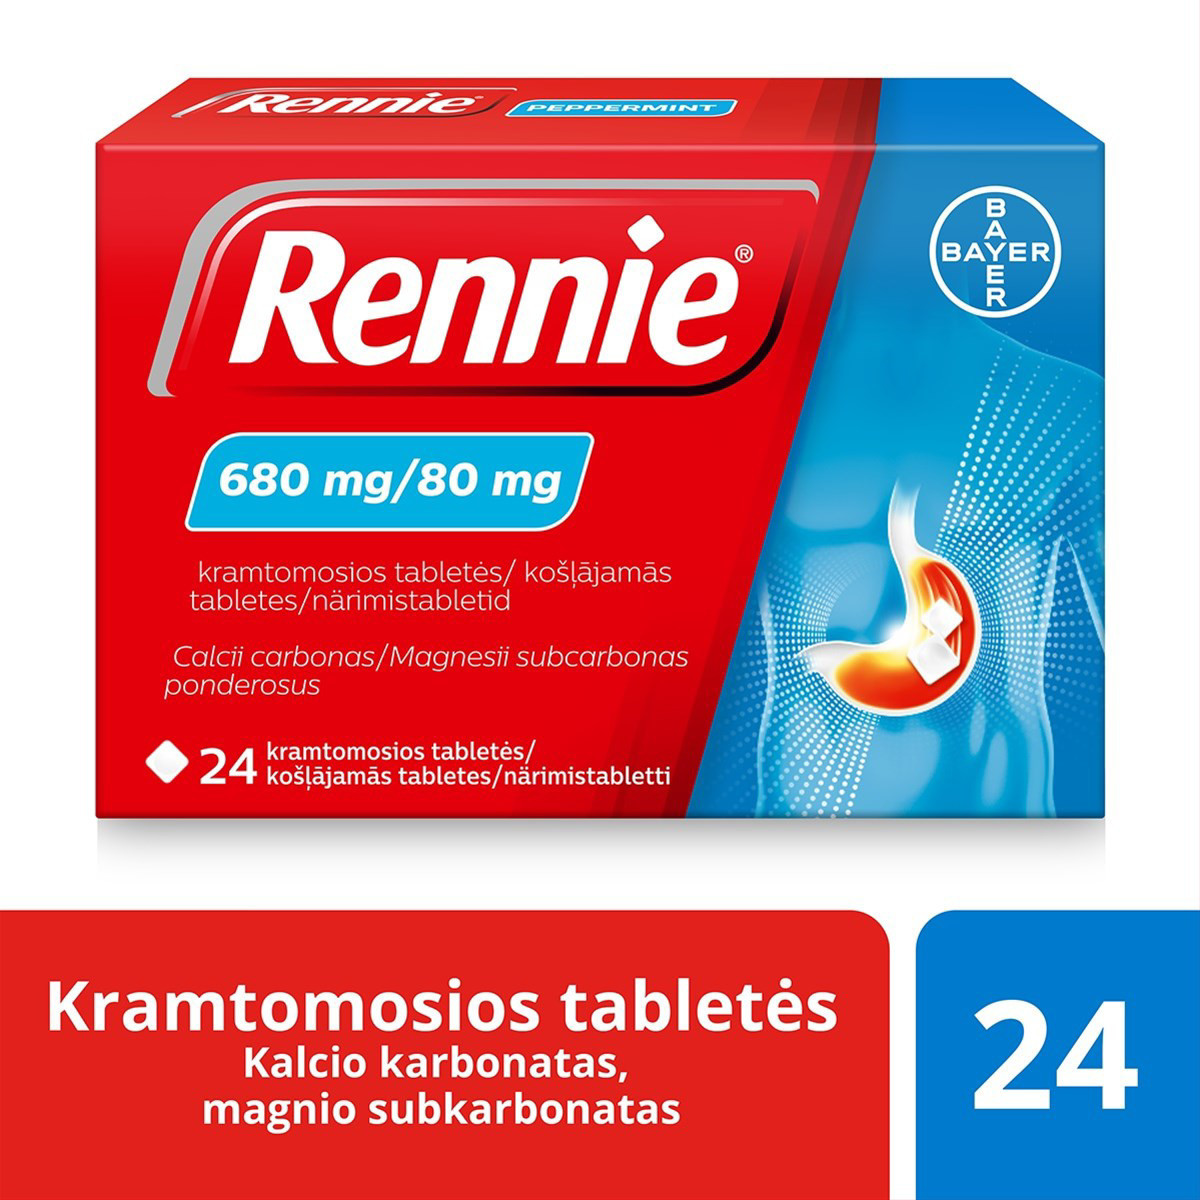 RENNIE, 680 mg/80 mg, kramtomosios tabletės, N24